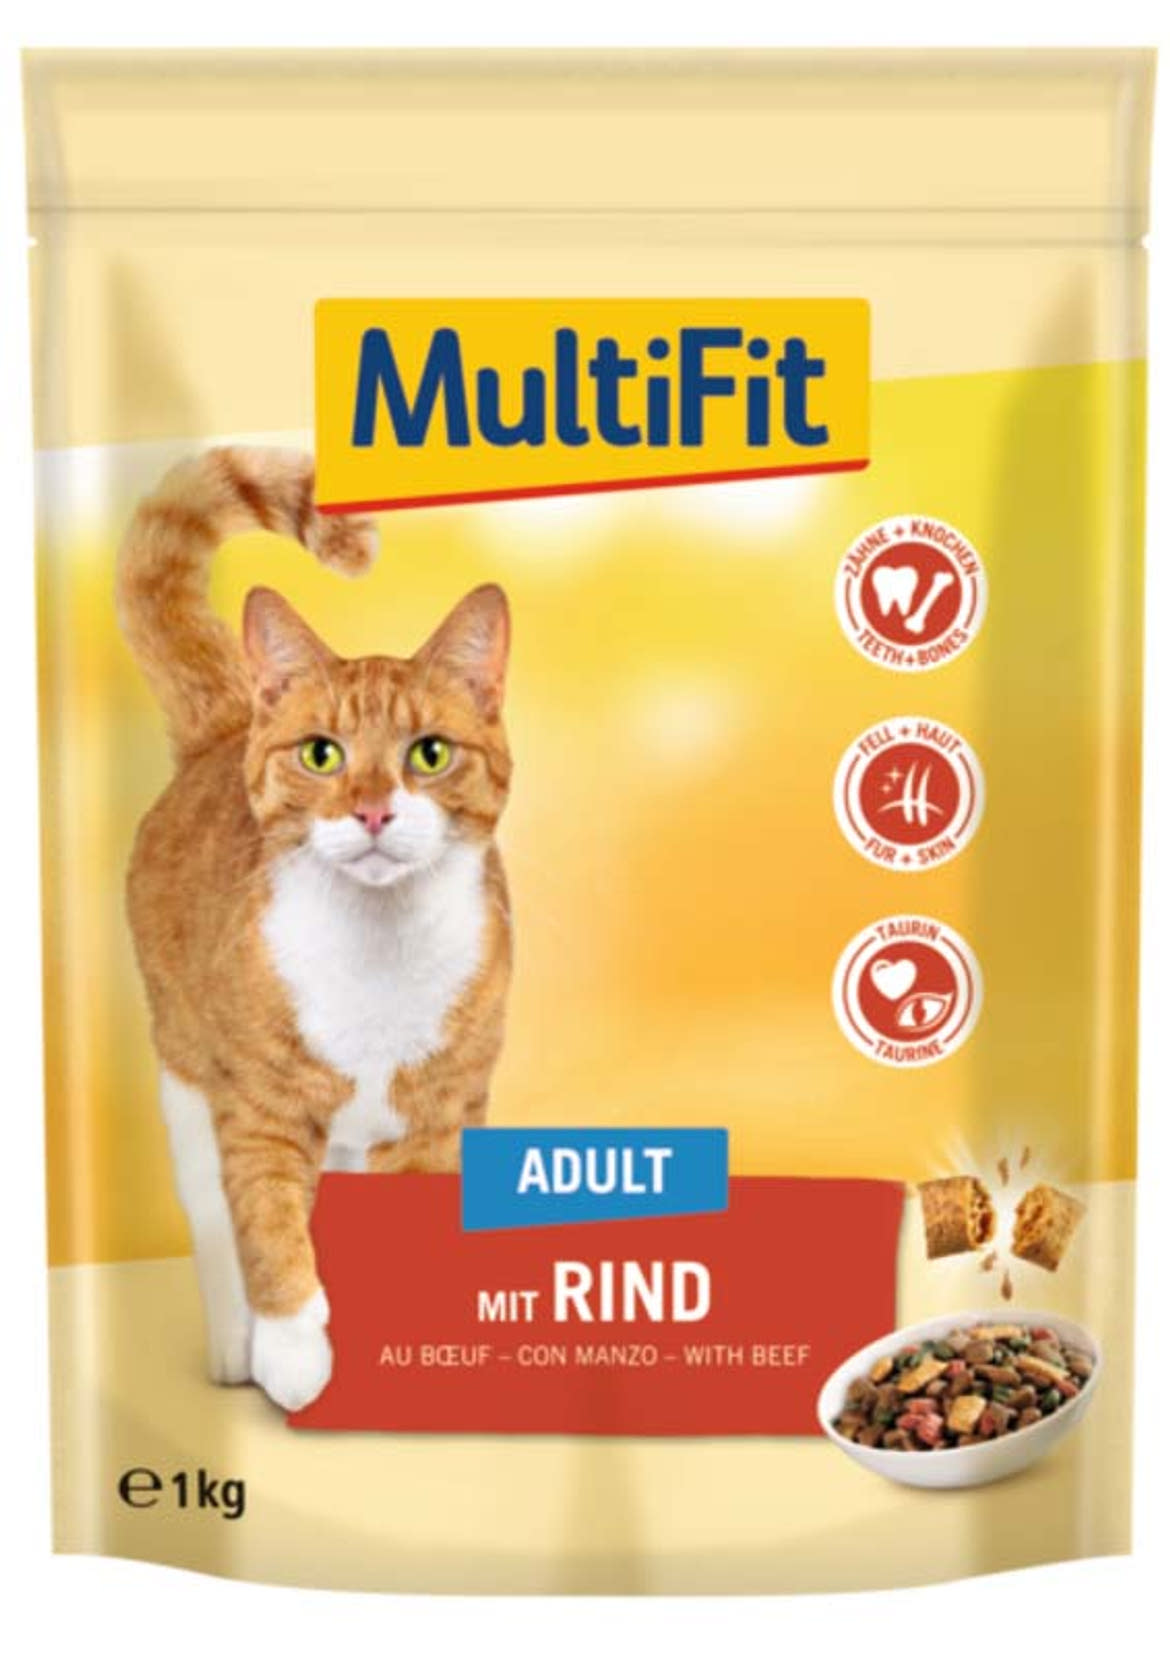 MultiFit macska szárazeledel adult marha